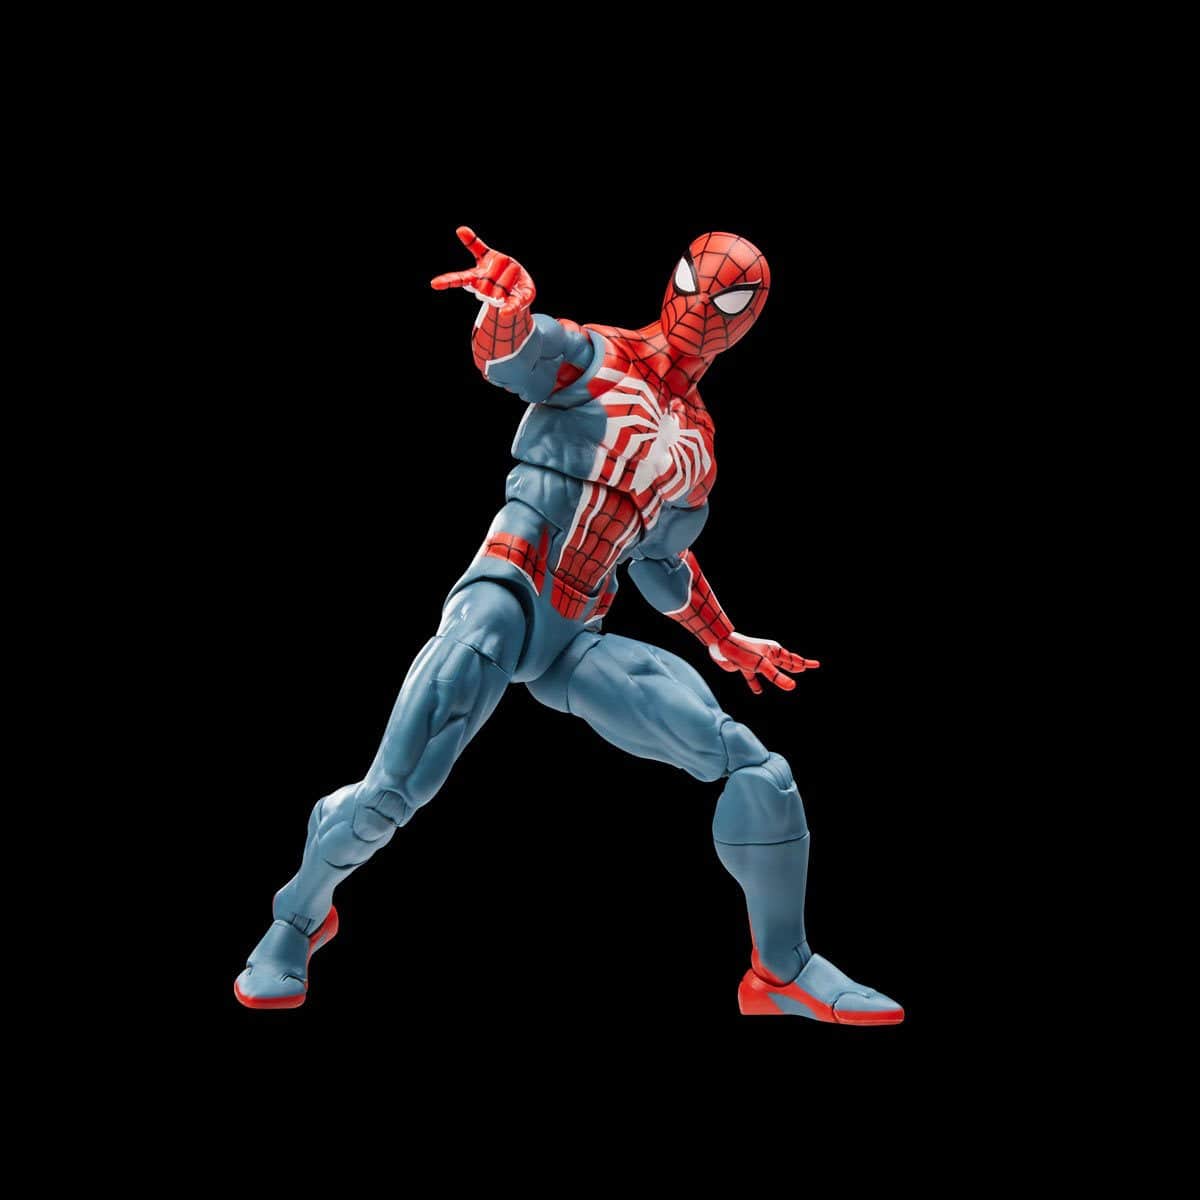 Marvel Legends Gamerverse Spider-Man pose